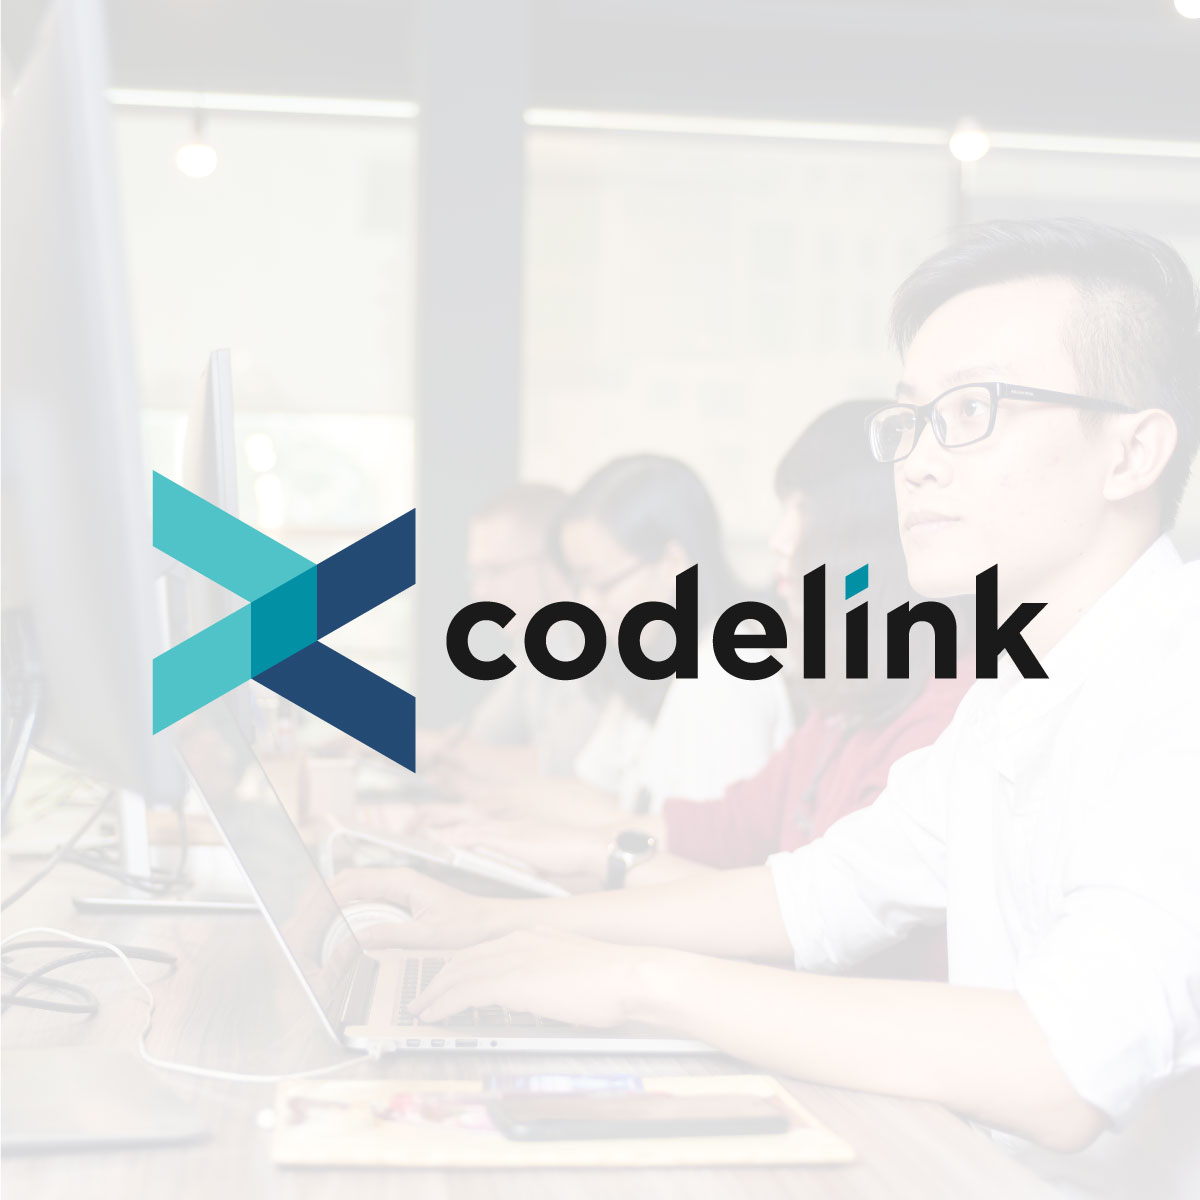 codelink v2 offline version